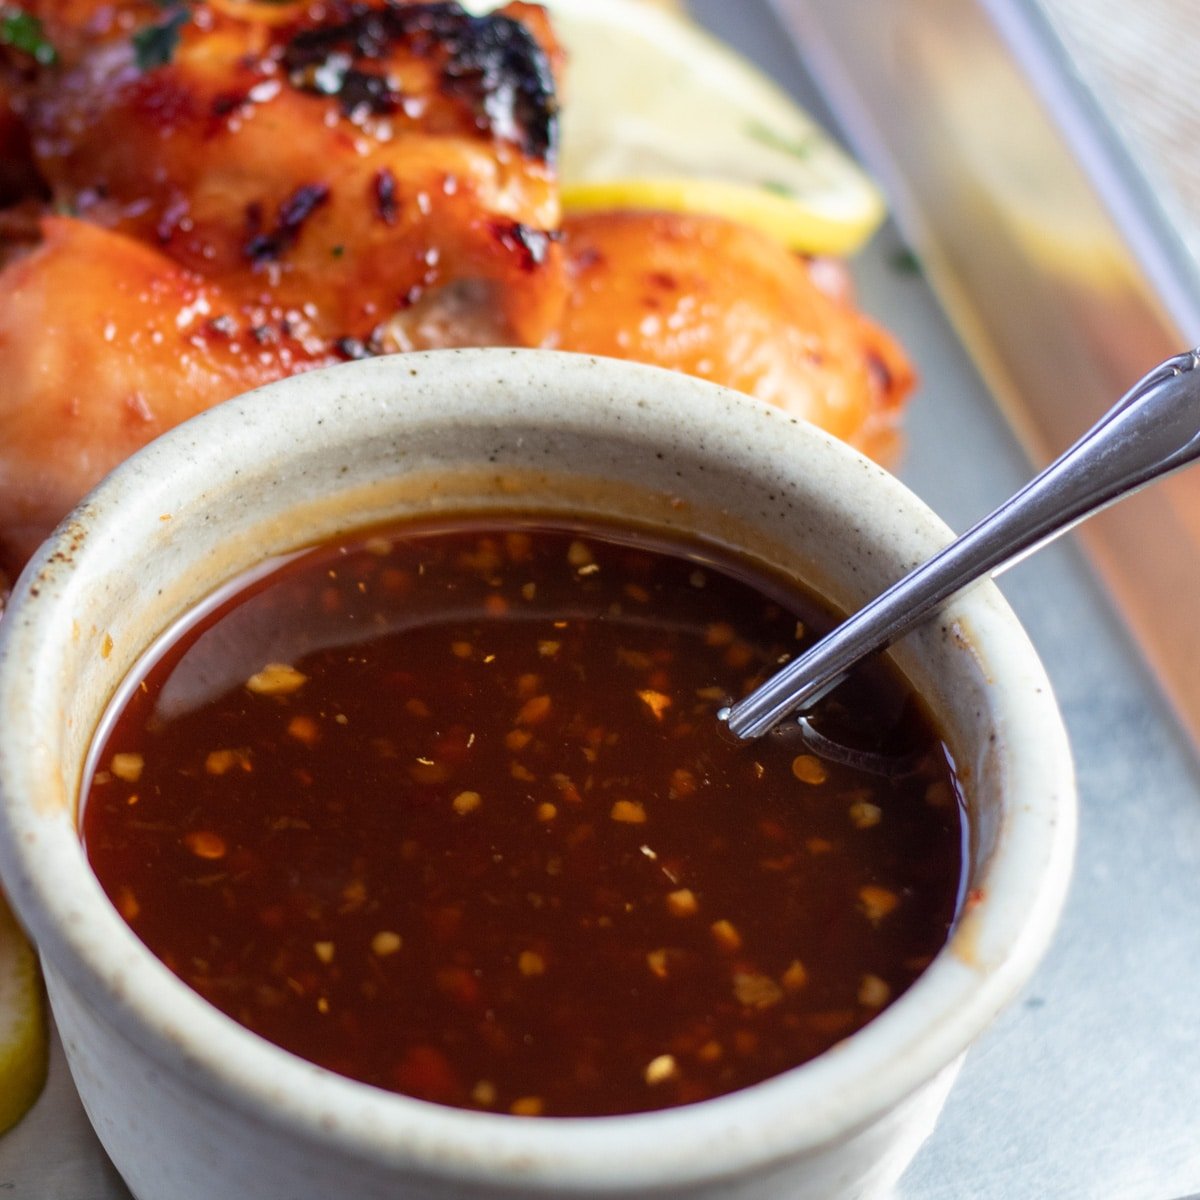 Immagine quadrata della salsa barbecue hawaiana in una piccola ciotola con un cucchiaio.